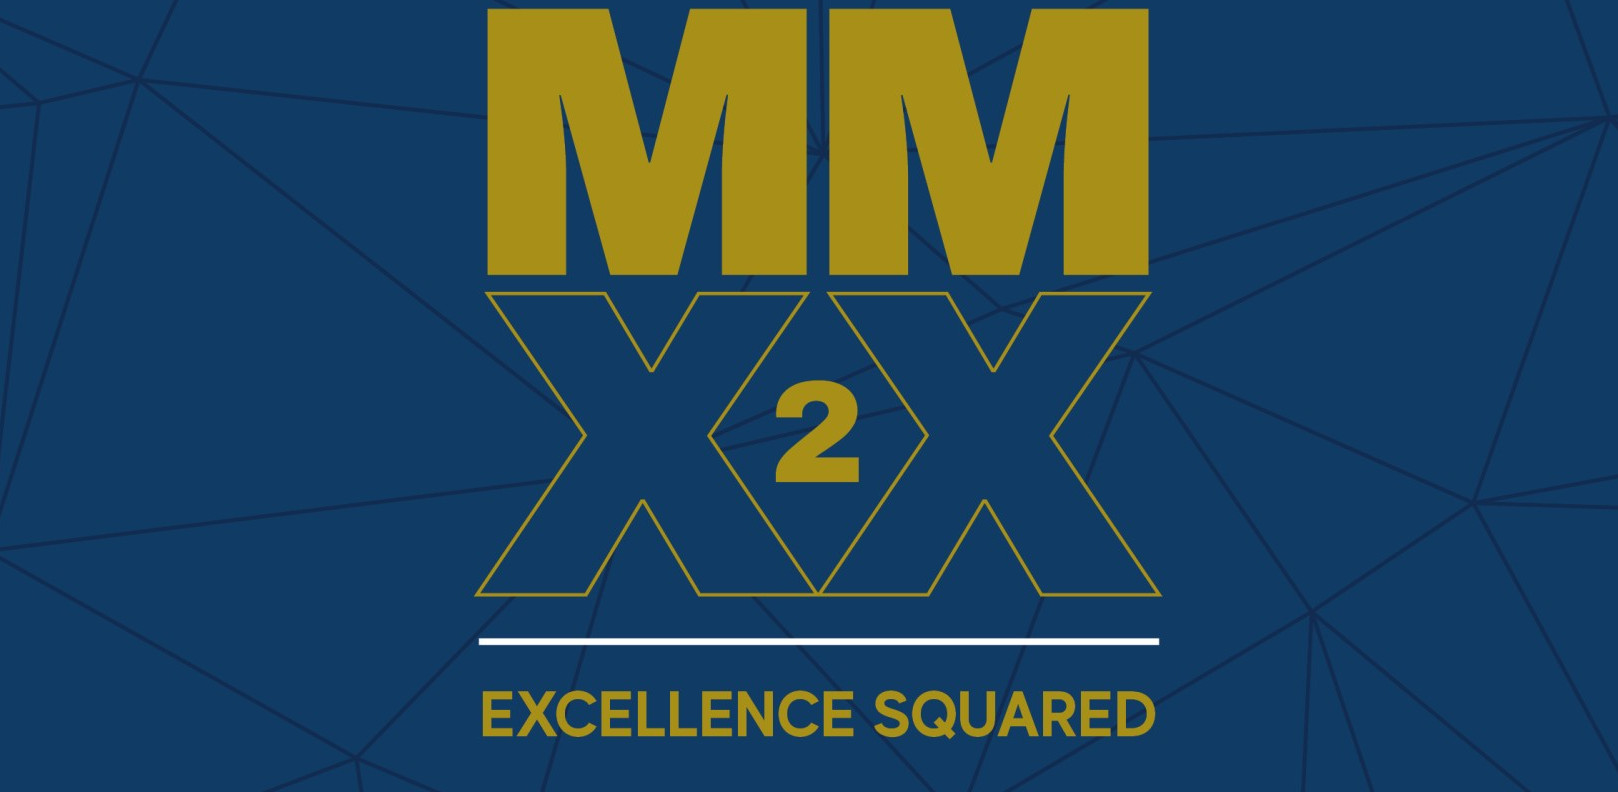 MMXX2